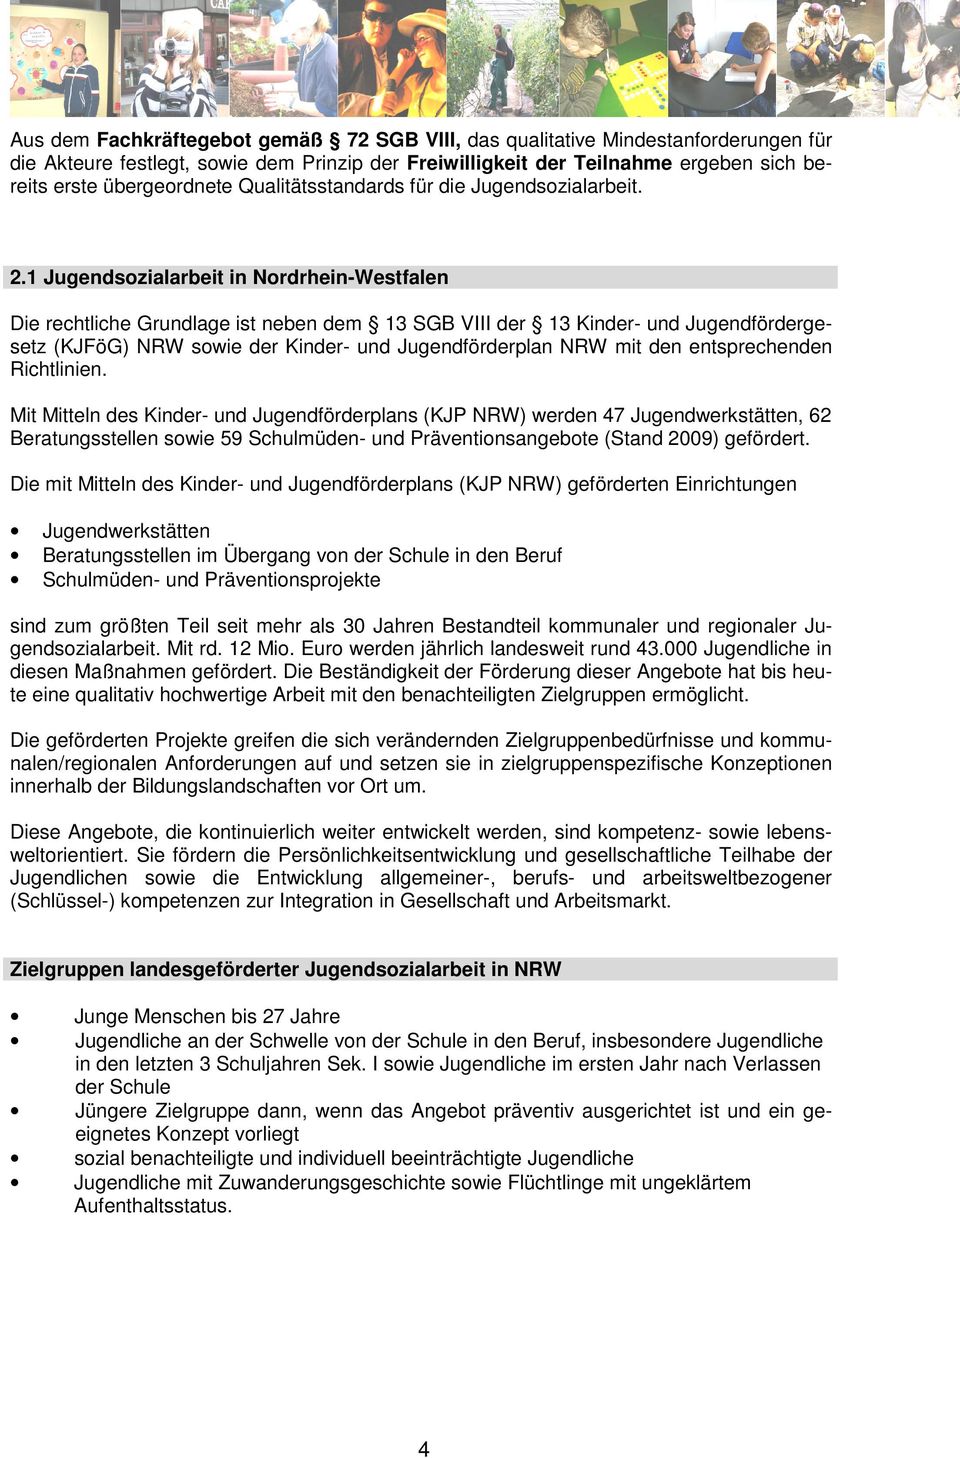 1 Jugendsozialarbeit in Nordrhein-Westfalen Die rechtliche Grundlage ist neben dem 13 SGB VIII der 13 Kinder- und Jugendfördergesetz (KJFöG) NRW sowie der Kinder- und Jugendförderplan NRW mit den